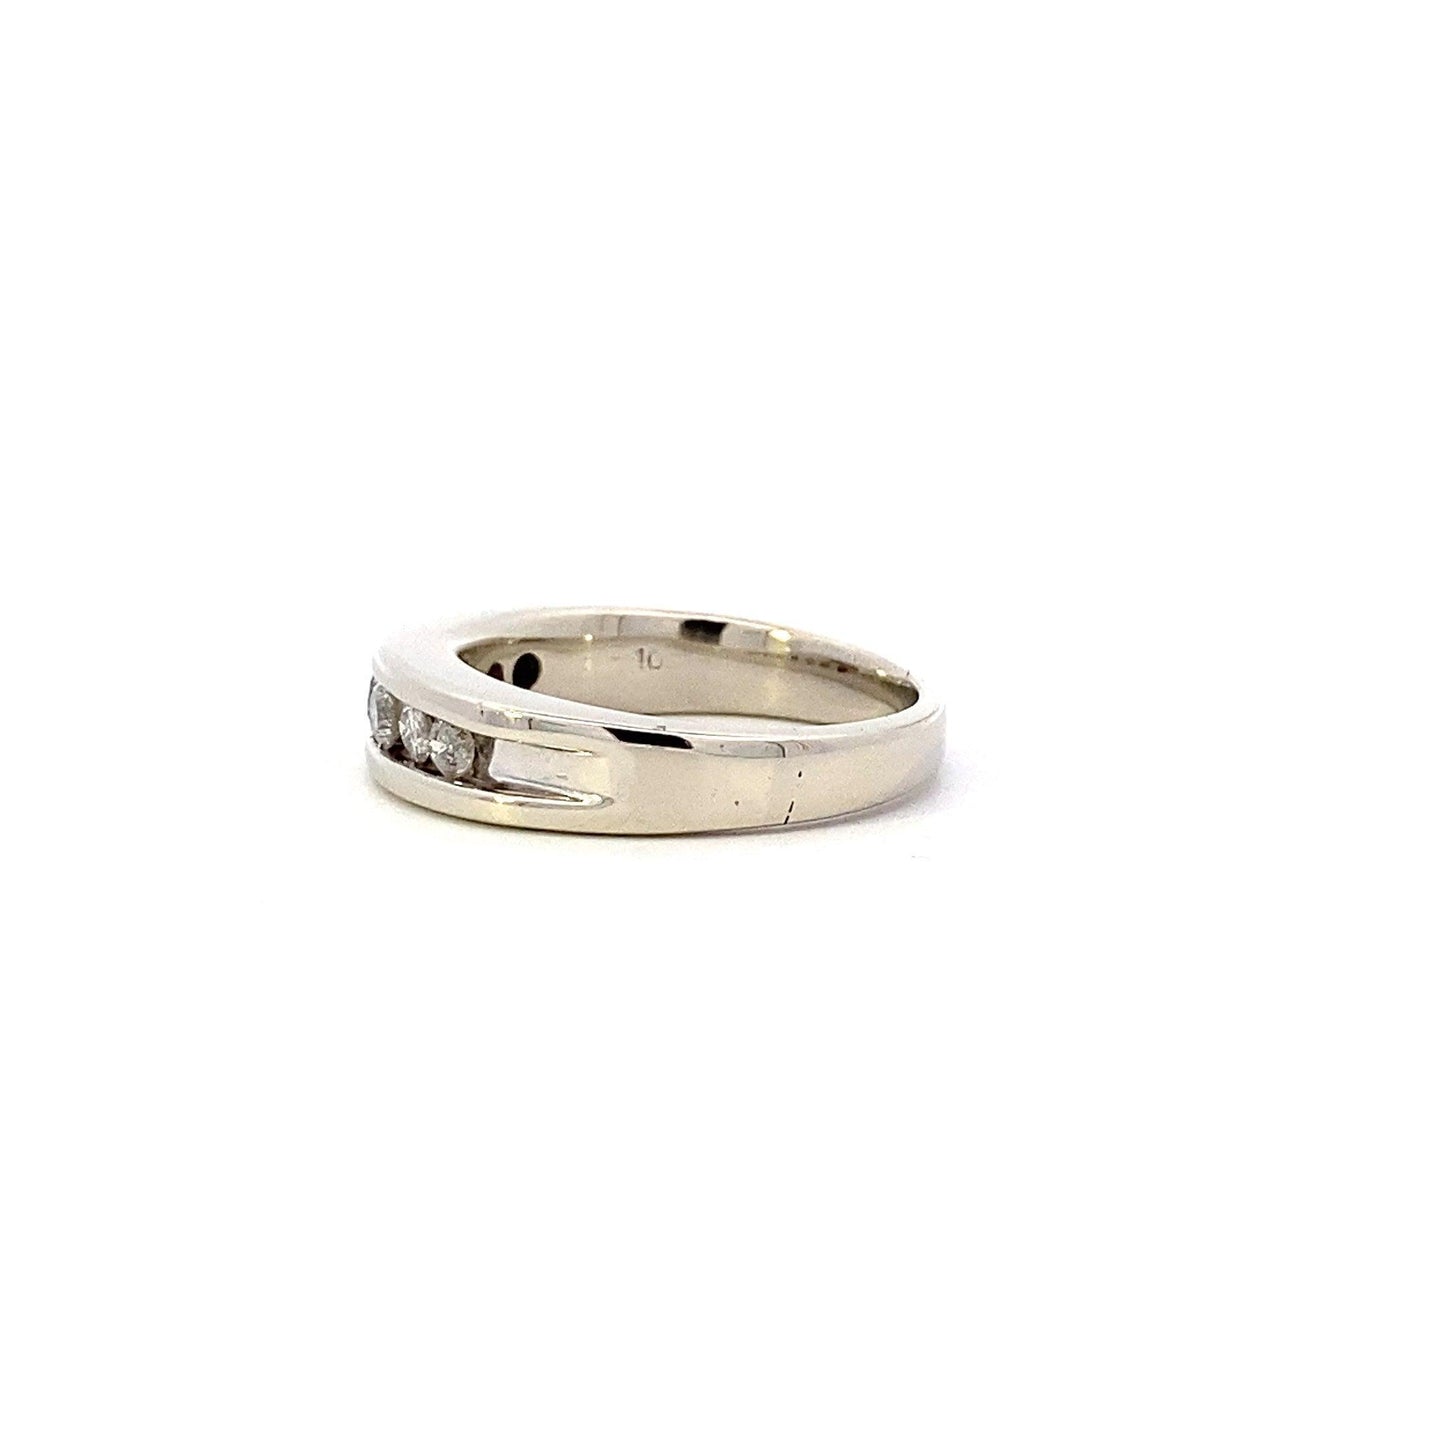 10K White Gold Diamond Ring - 0.48ct - ipawnishop.com